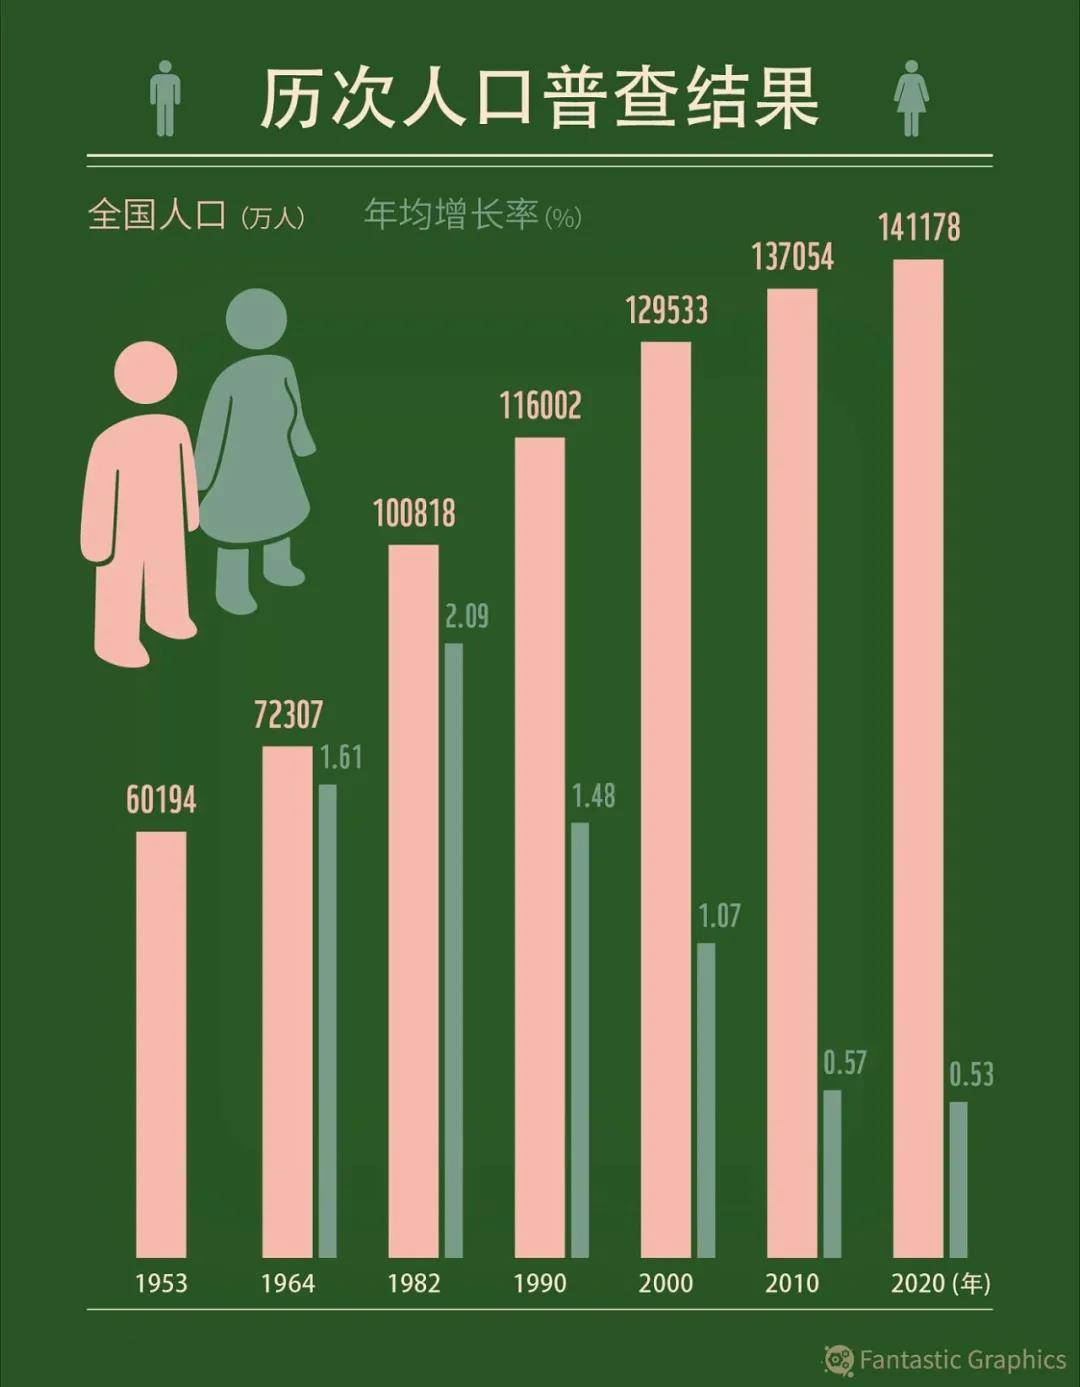 算胆先生独胆双胆340期_生育旺盛期妇女年均减少340万_大龄妇女生育孩子愚钝